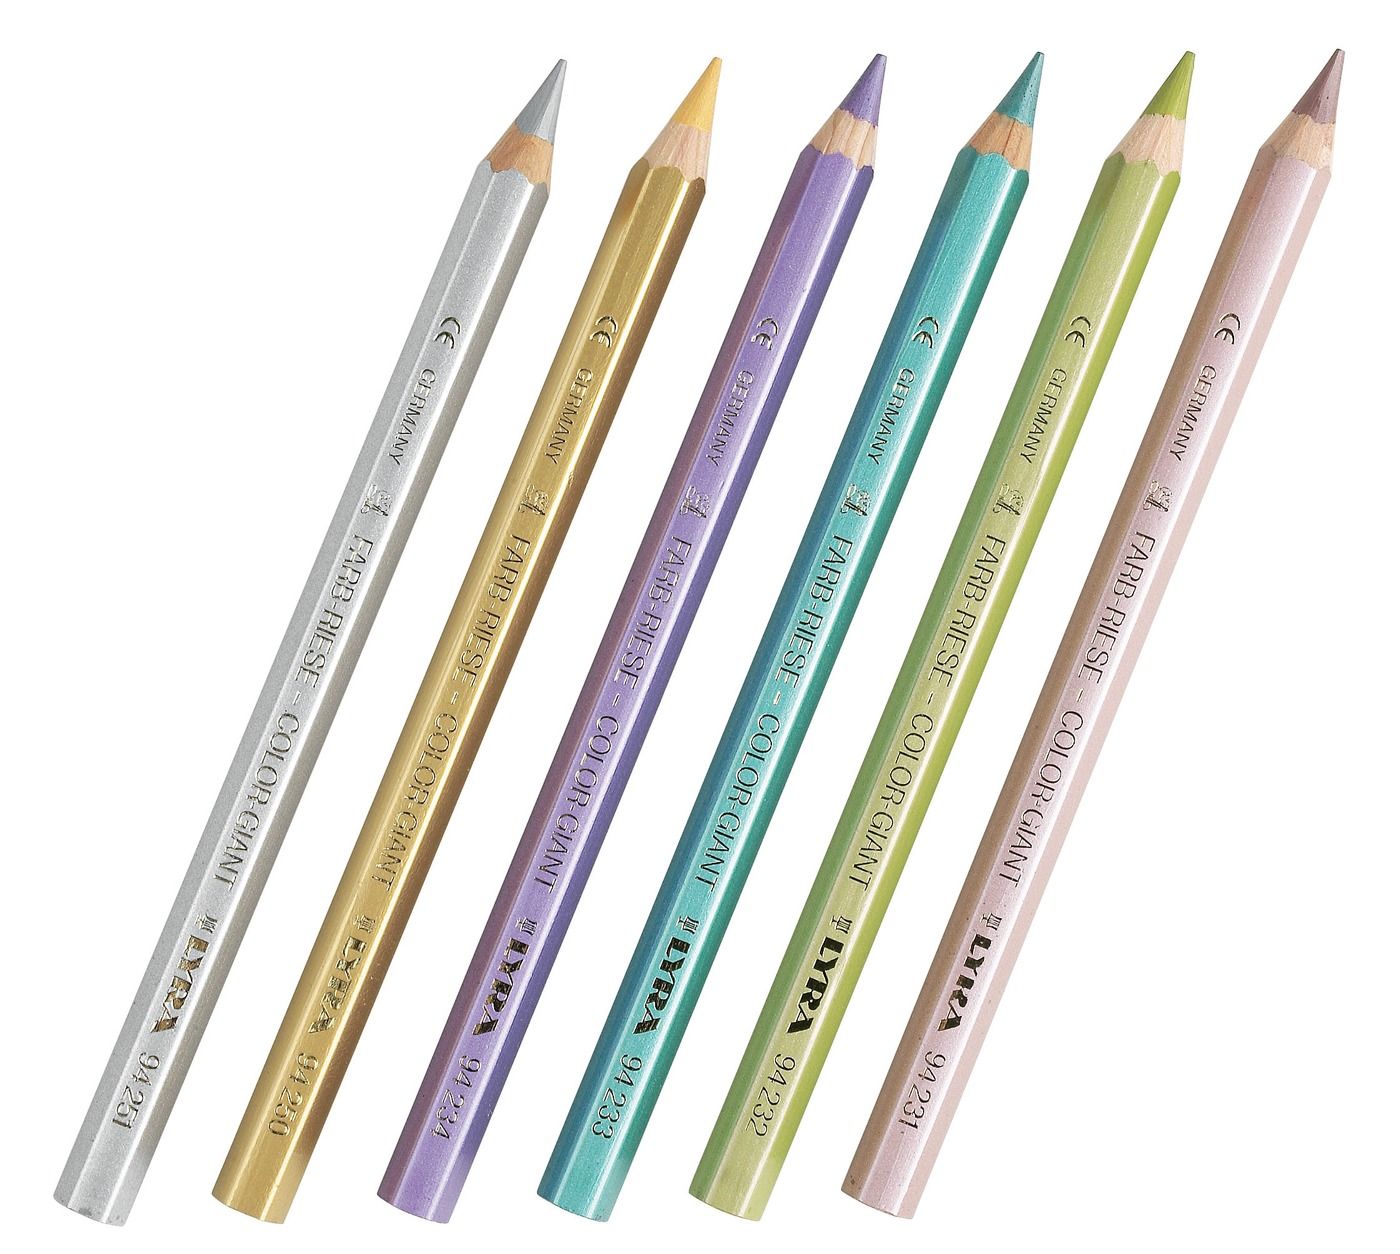 Lyra ColorGiants Skin Tones Colored Pencils Set 12 Color